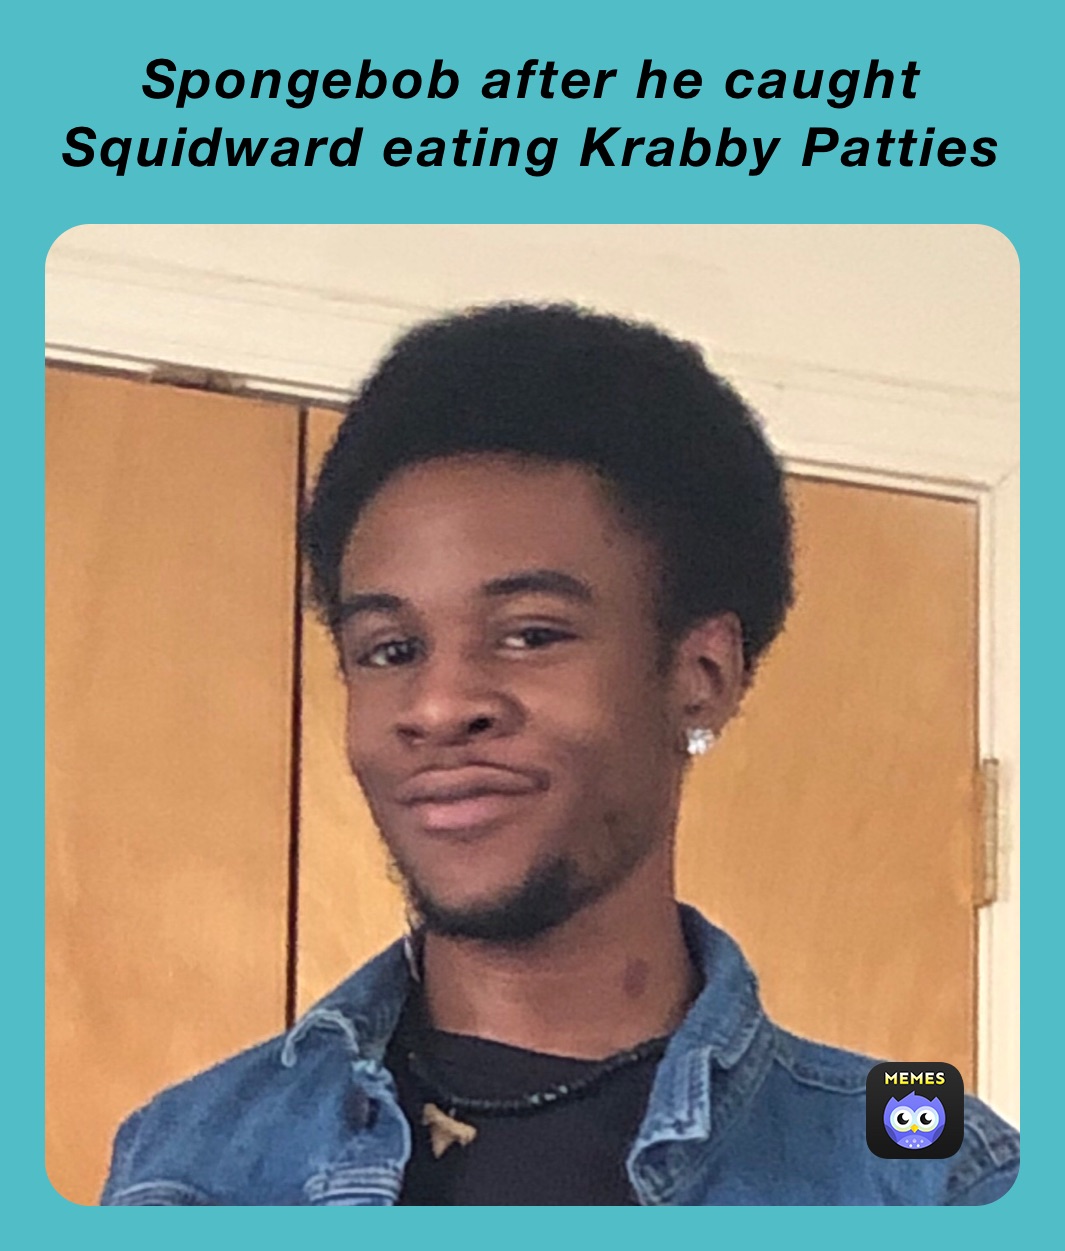 Spongebob after he caught Squidward eating Krabby Patties